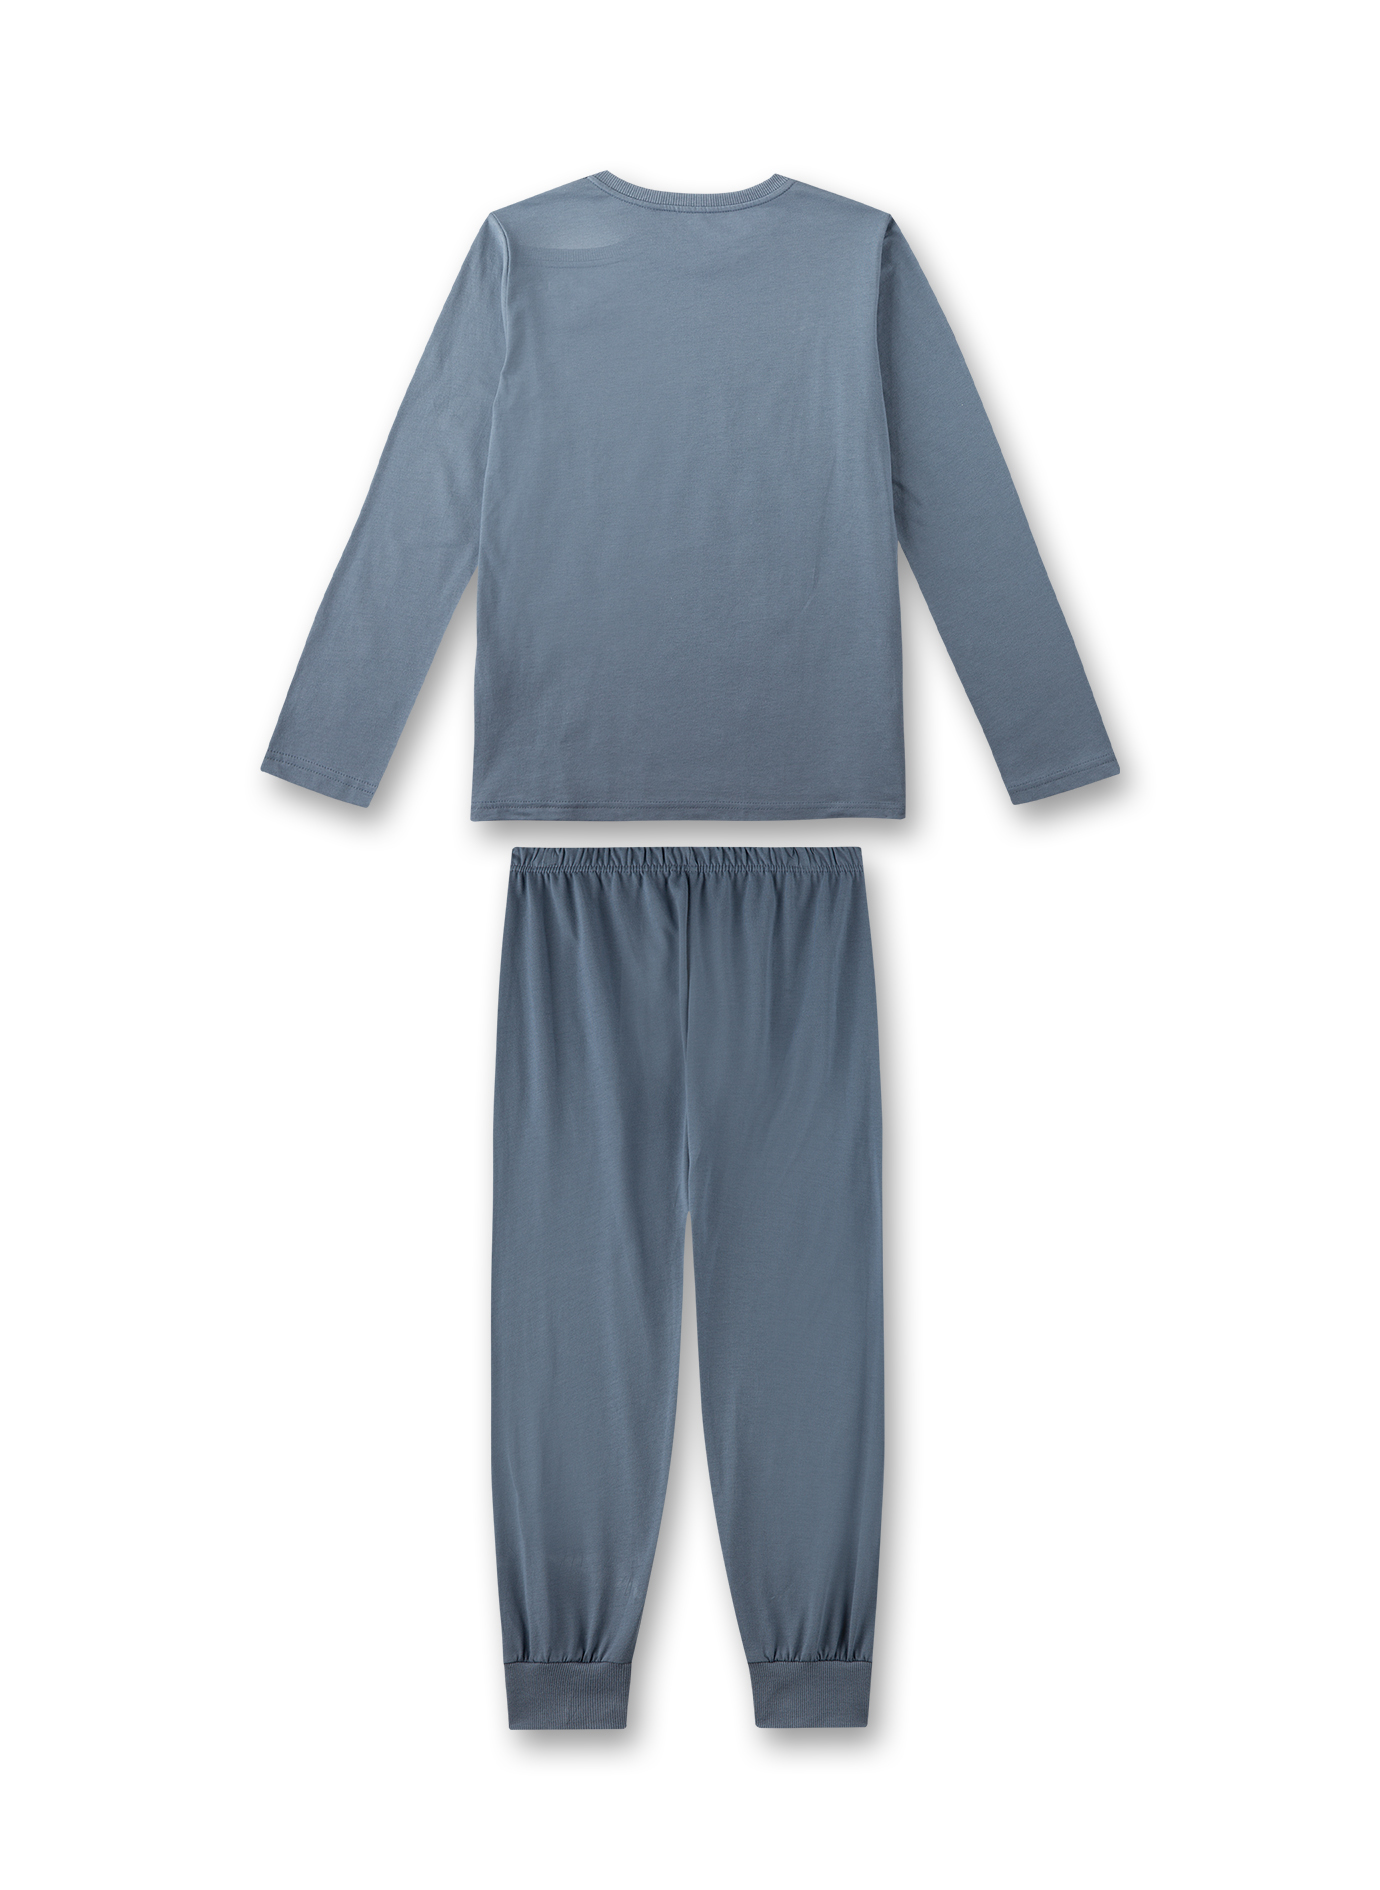 Jungen-Schlafanzug lang Grau